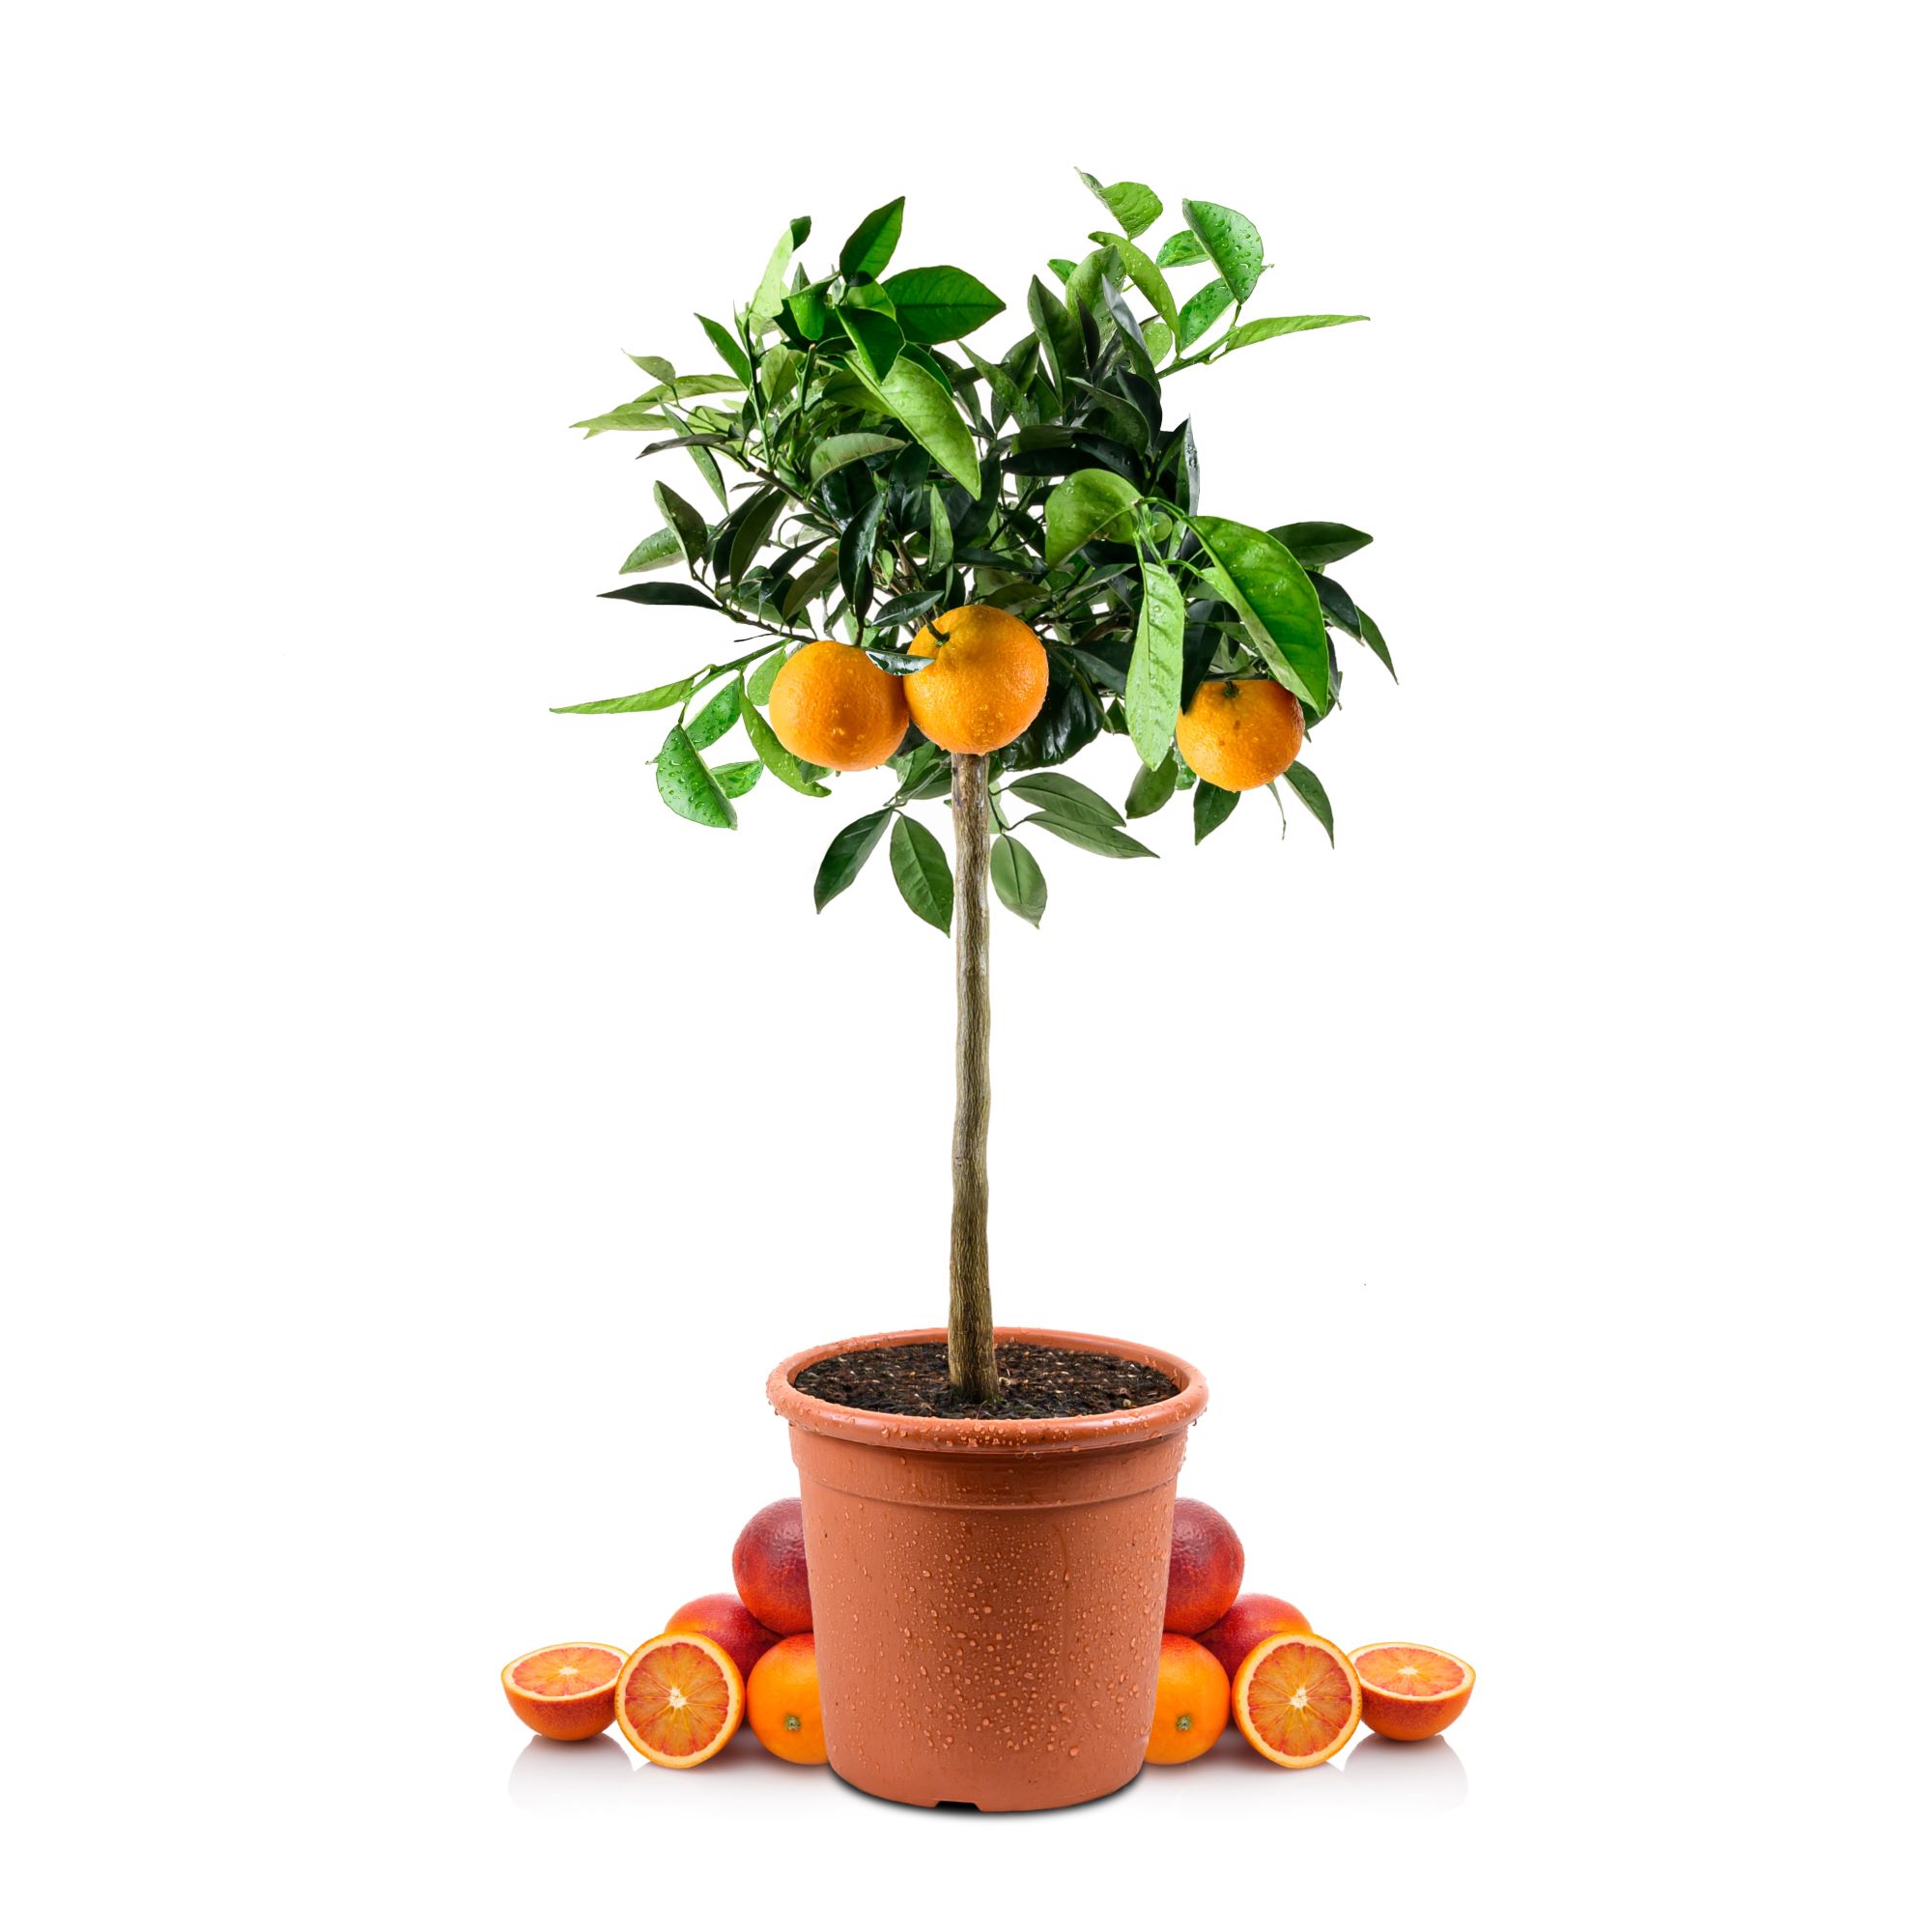 Blutorangenbaum Tarocco - Citrus Sinensis 'Tarocco'